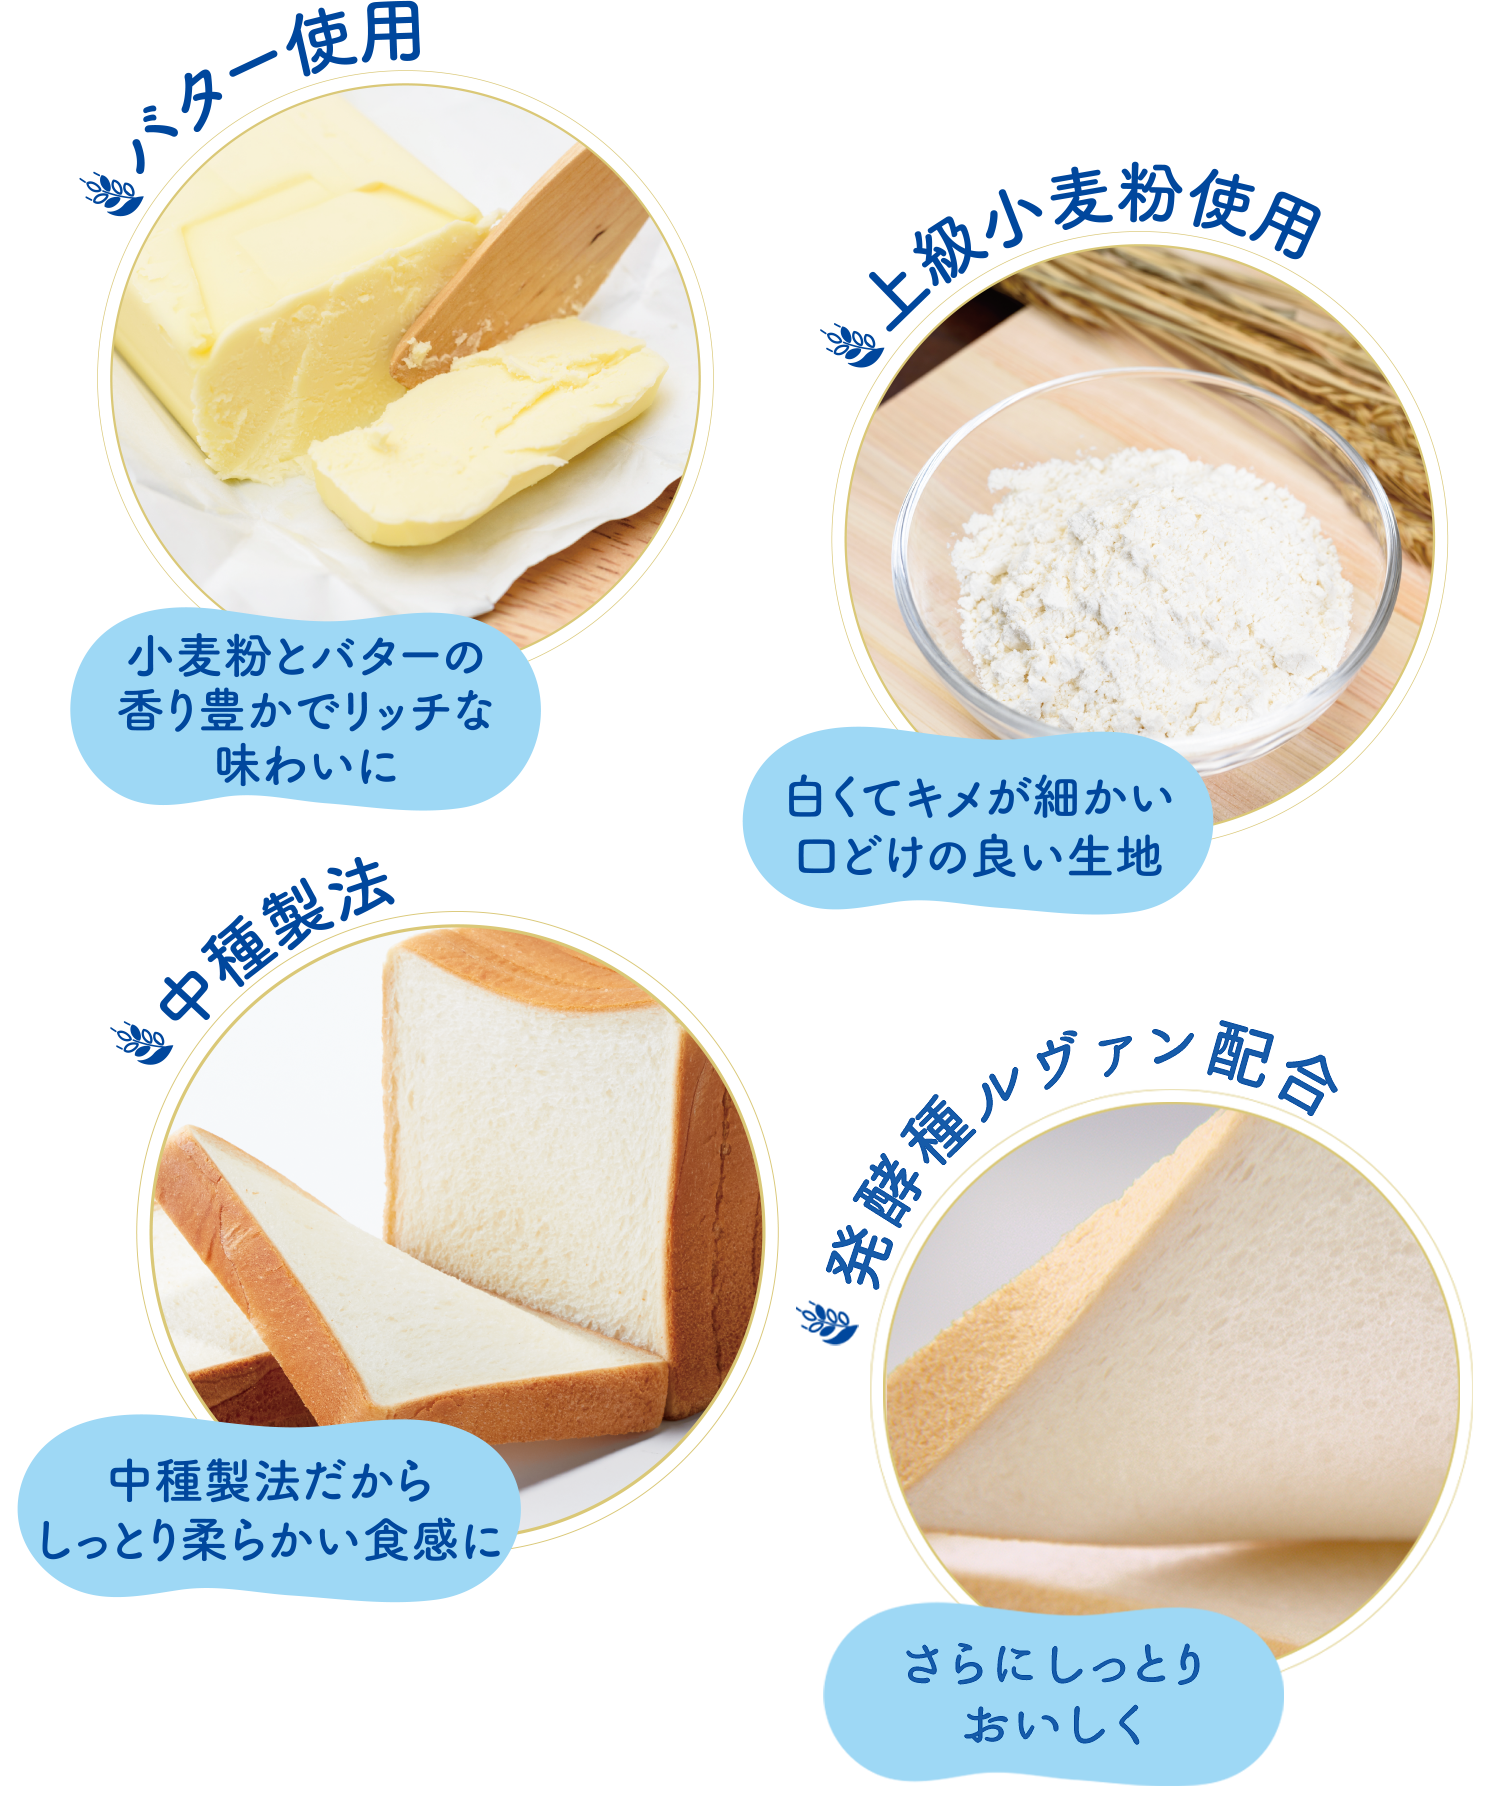 上級小麦粉使用、バター使用、中種製法 発酵種ルヴァン配合